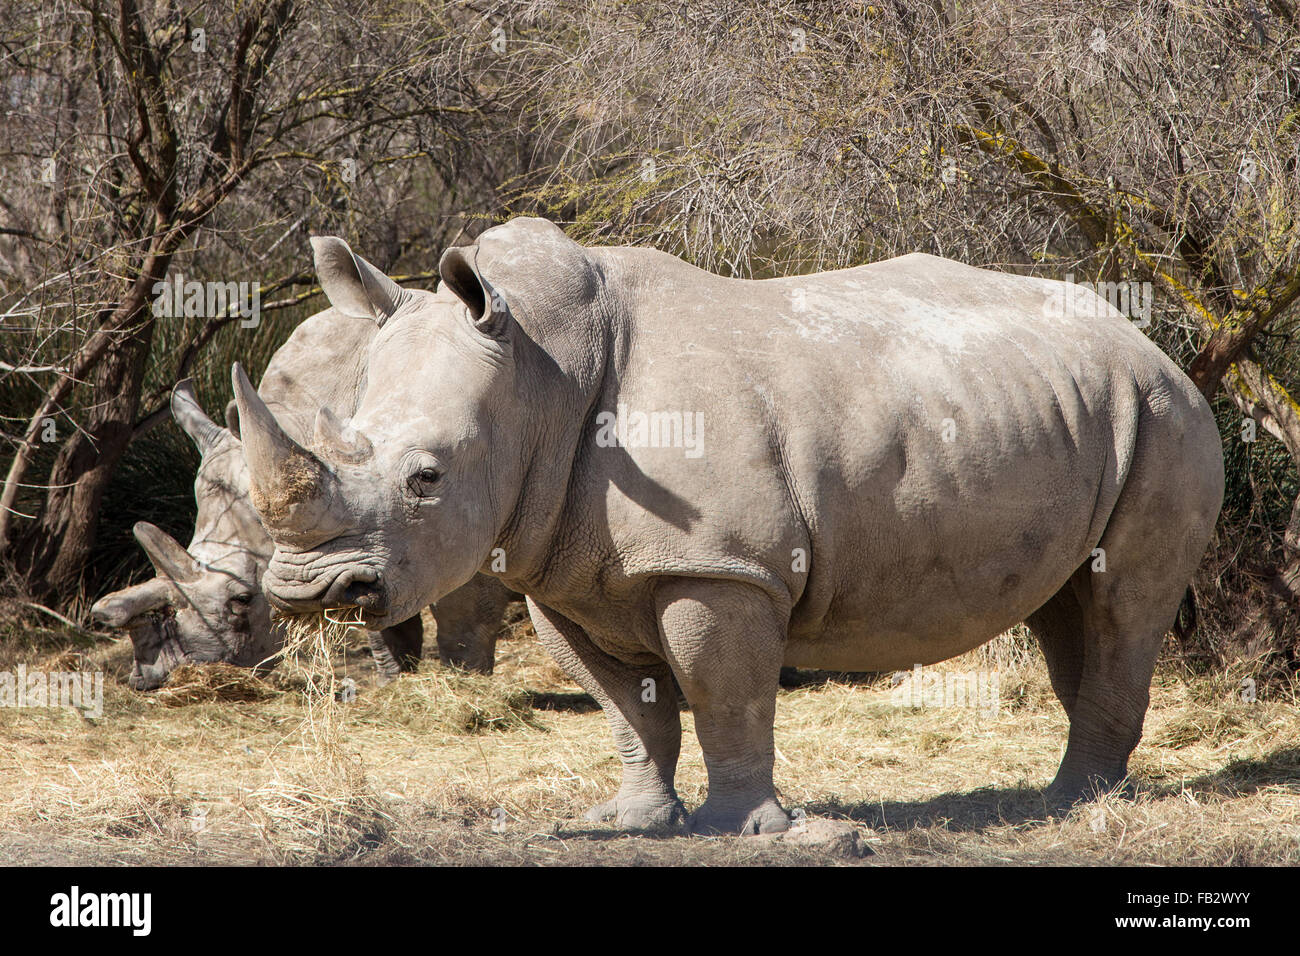 White Rhinoceros (Ceratotherium simum) eating hay. Stock Photo